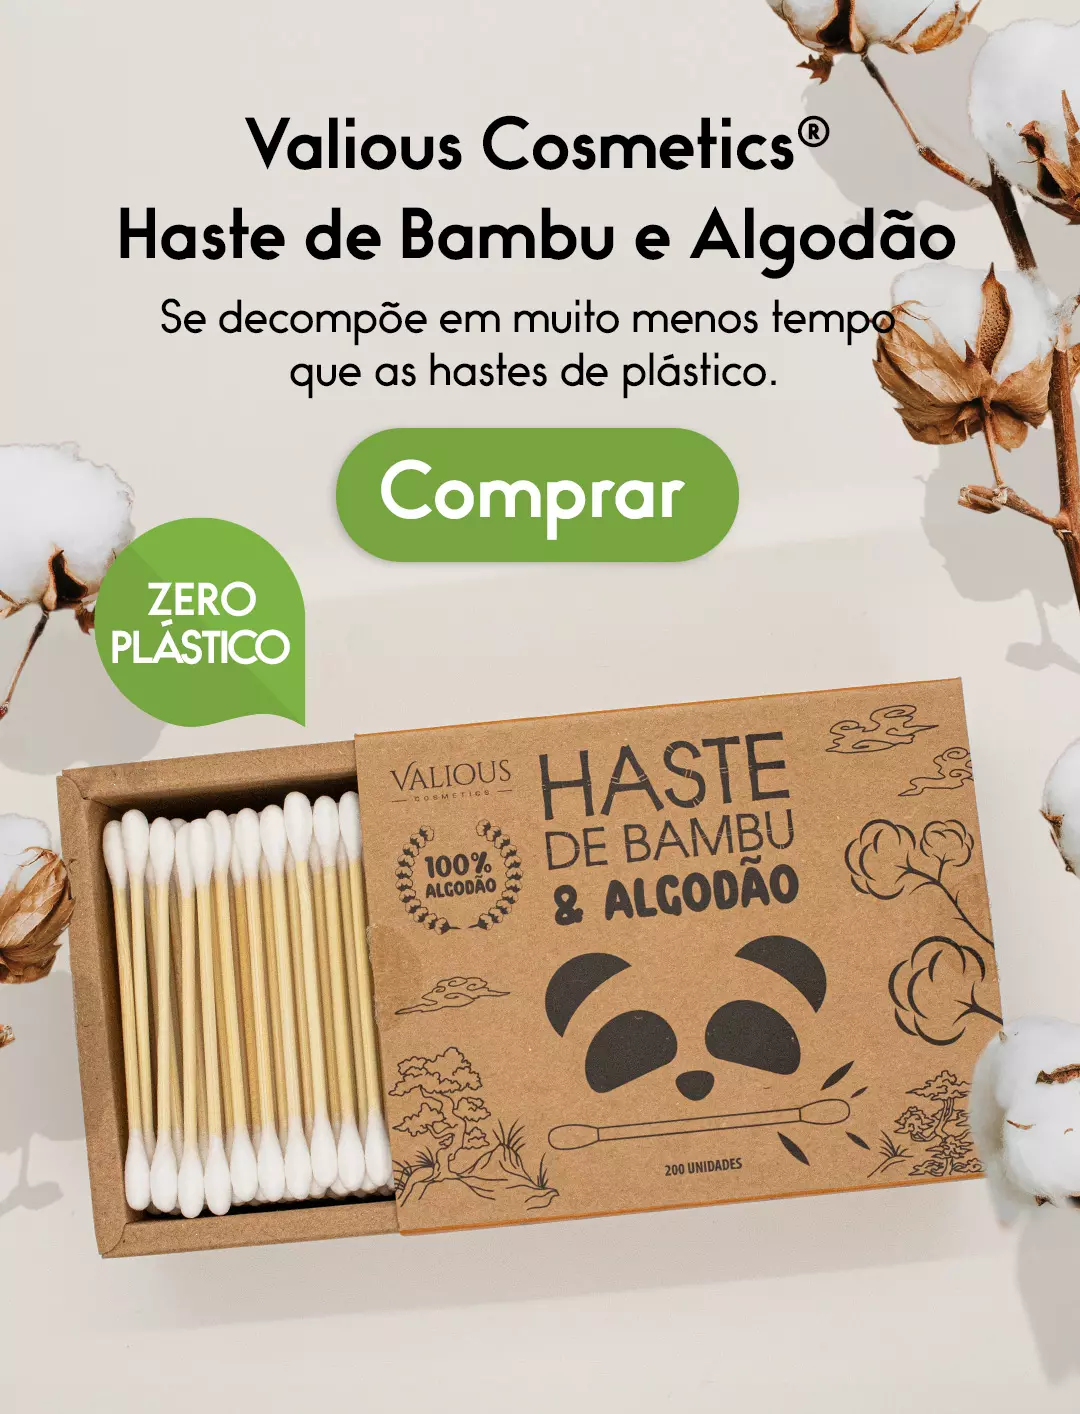 valious-cosmetics-hastes-de-bambu-e-algodão-akora-brasil-2023-11-16-mobile